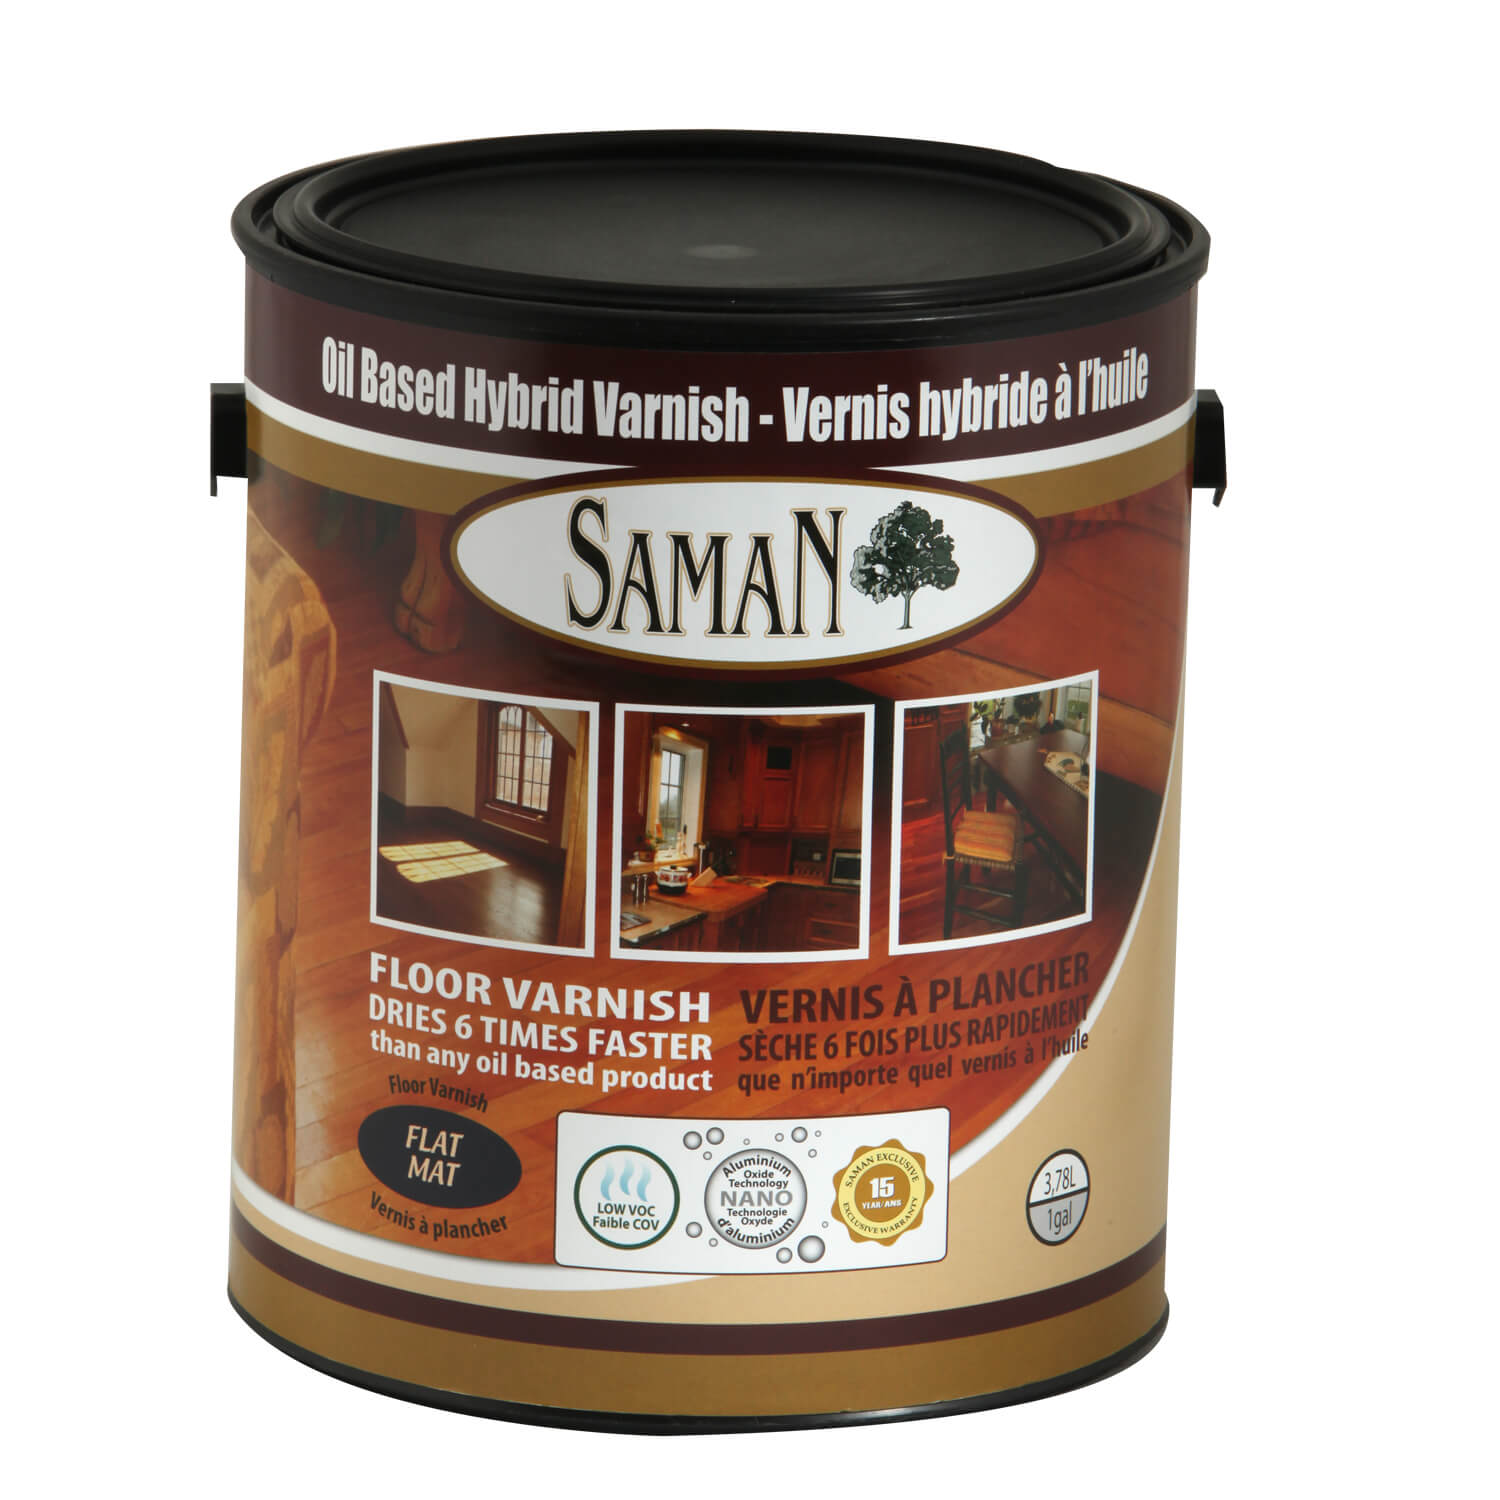 Oil based hybrid varnish SamaN